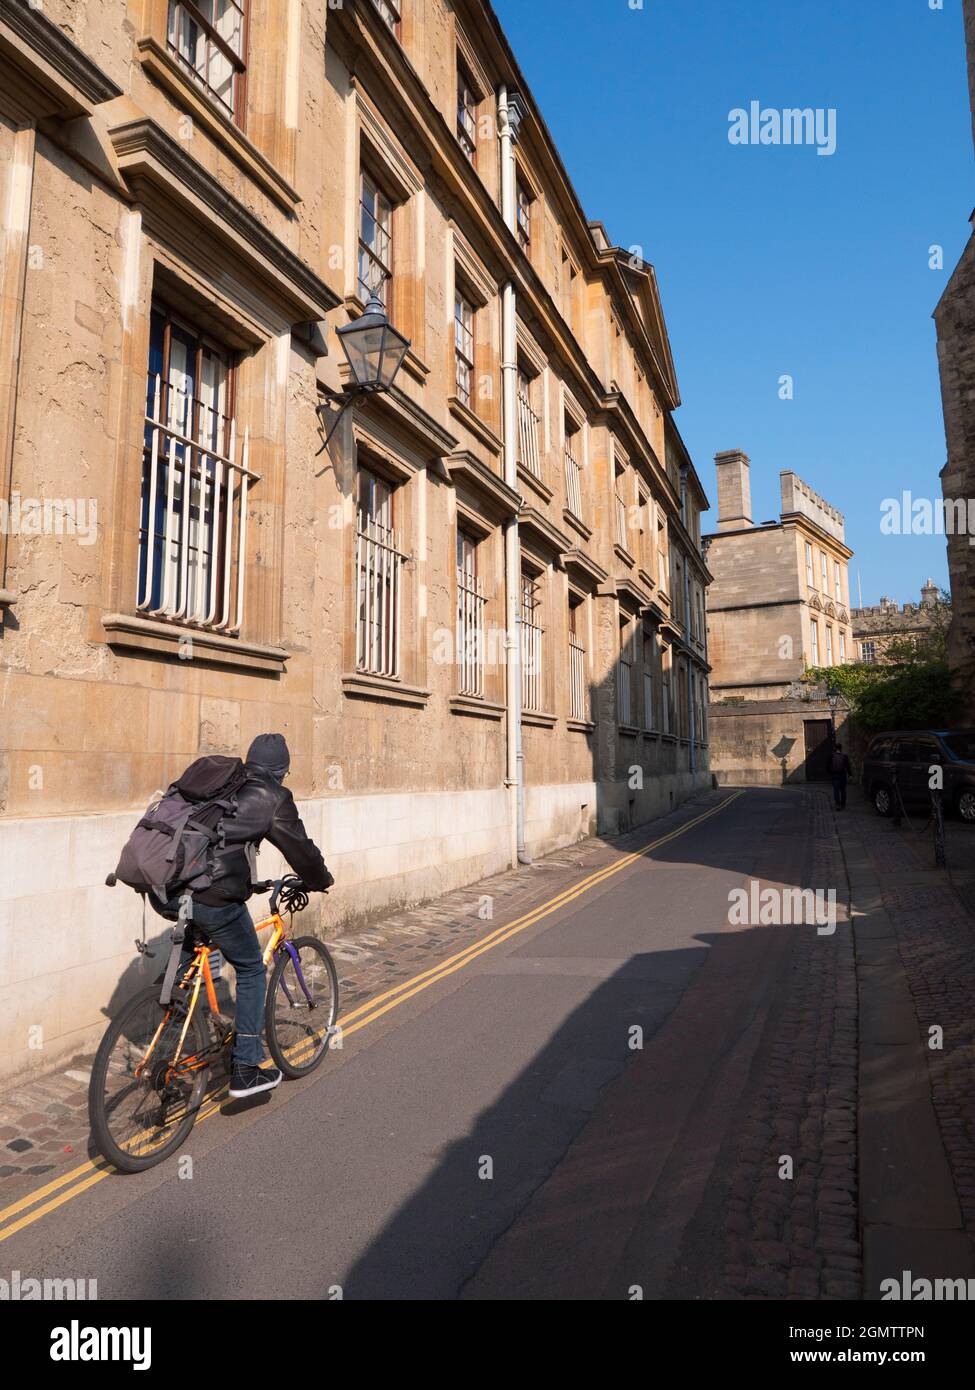 Oxford, Inglaterra - 29 de marzo de 2019 La histórica ciudad de Oxford tiene muchos lugares de interés, lugares de interés y universidades para ver. Pero igual de interesante Foto de stock